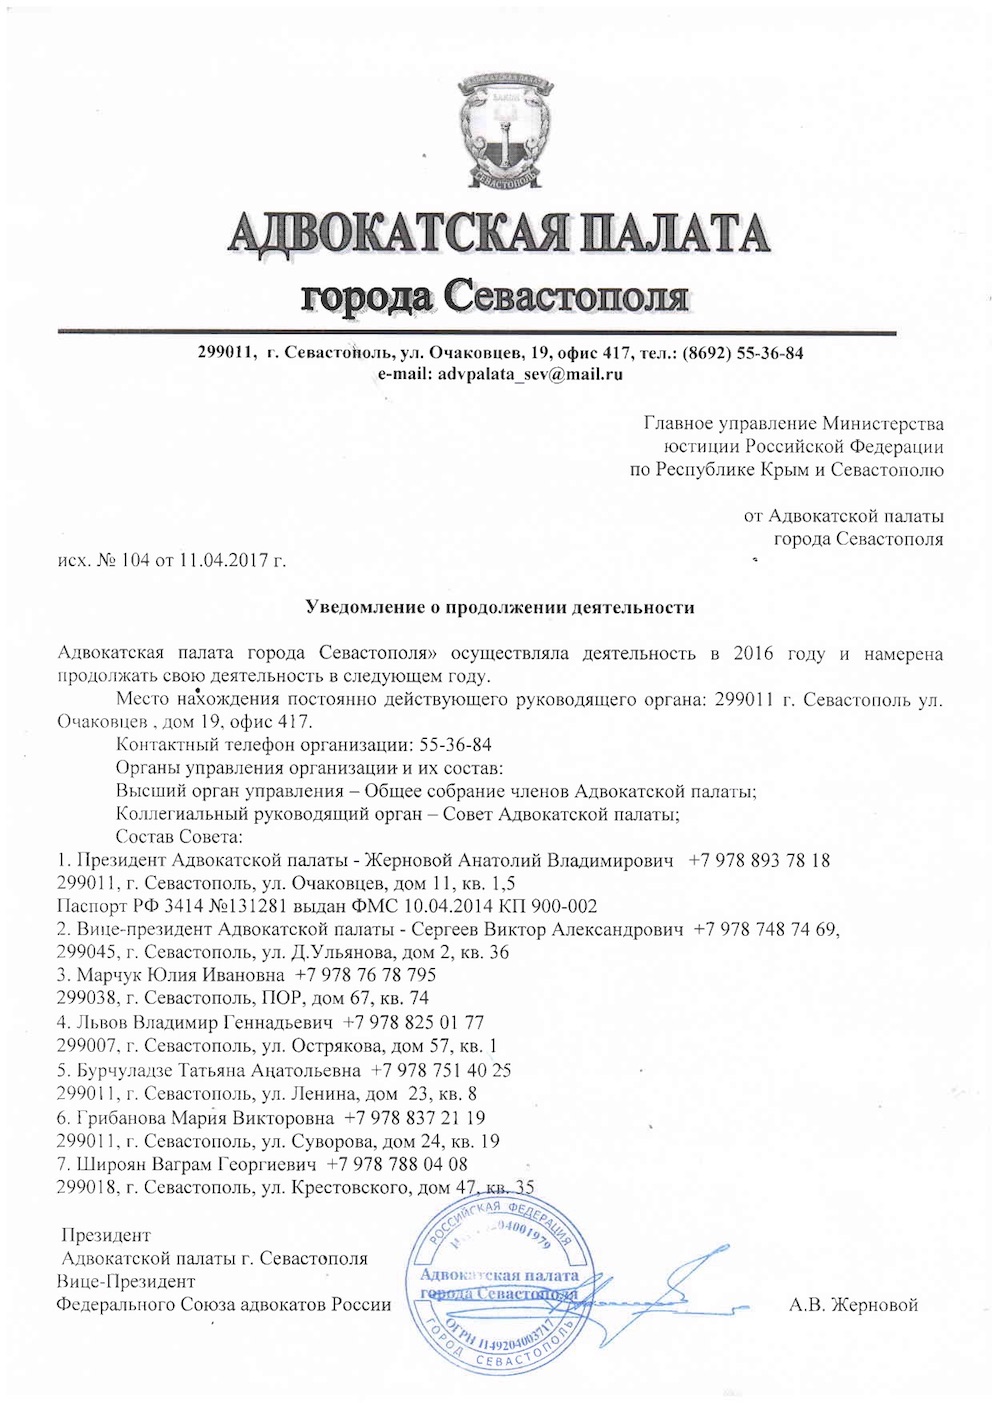 Уведомления, отчеты Адвокатской Палаты в Минюст за 2016 год